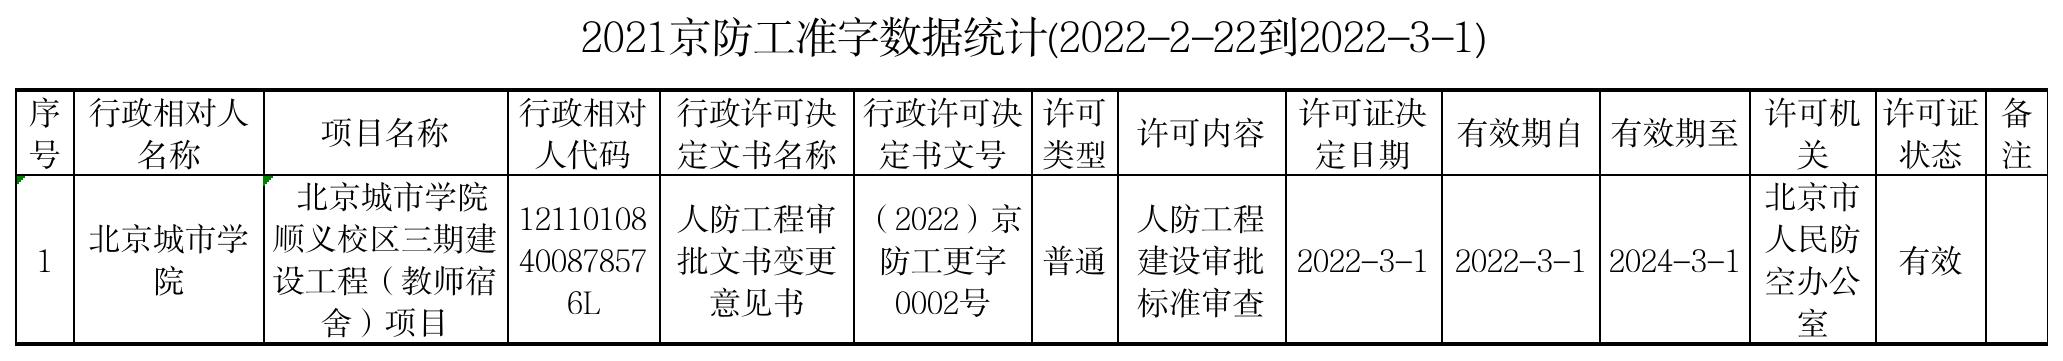 3.4 2022京防工准字数据统计(2022.2.22-2022.3.1)左琰.jpg